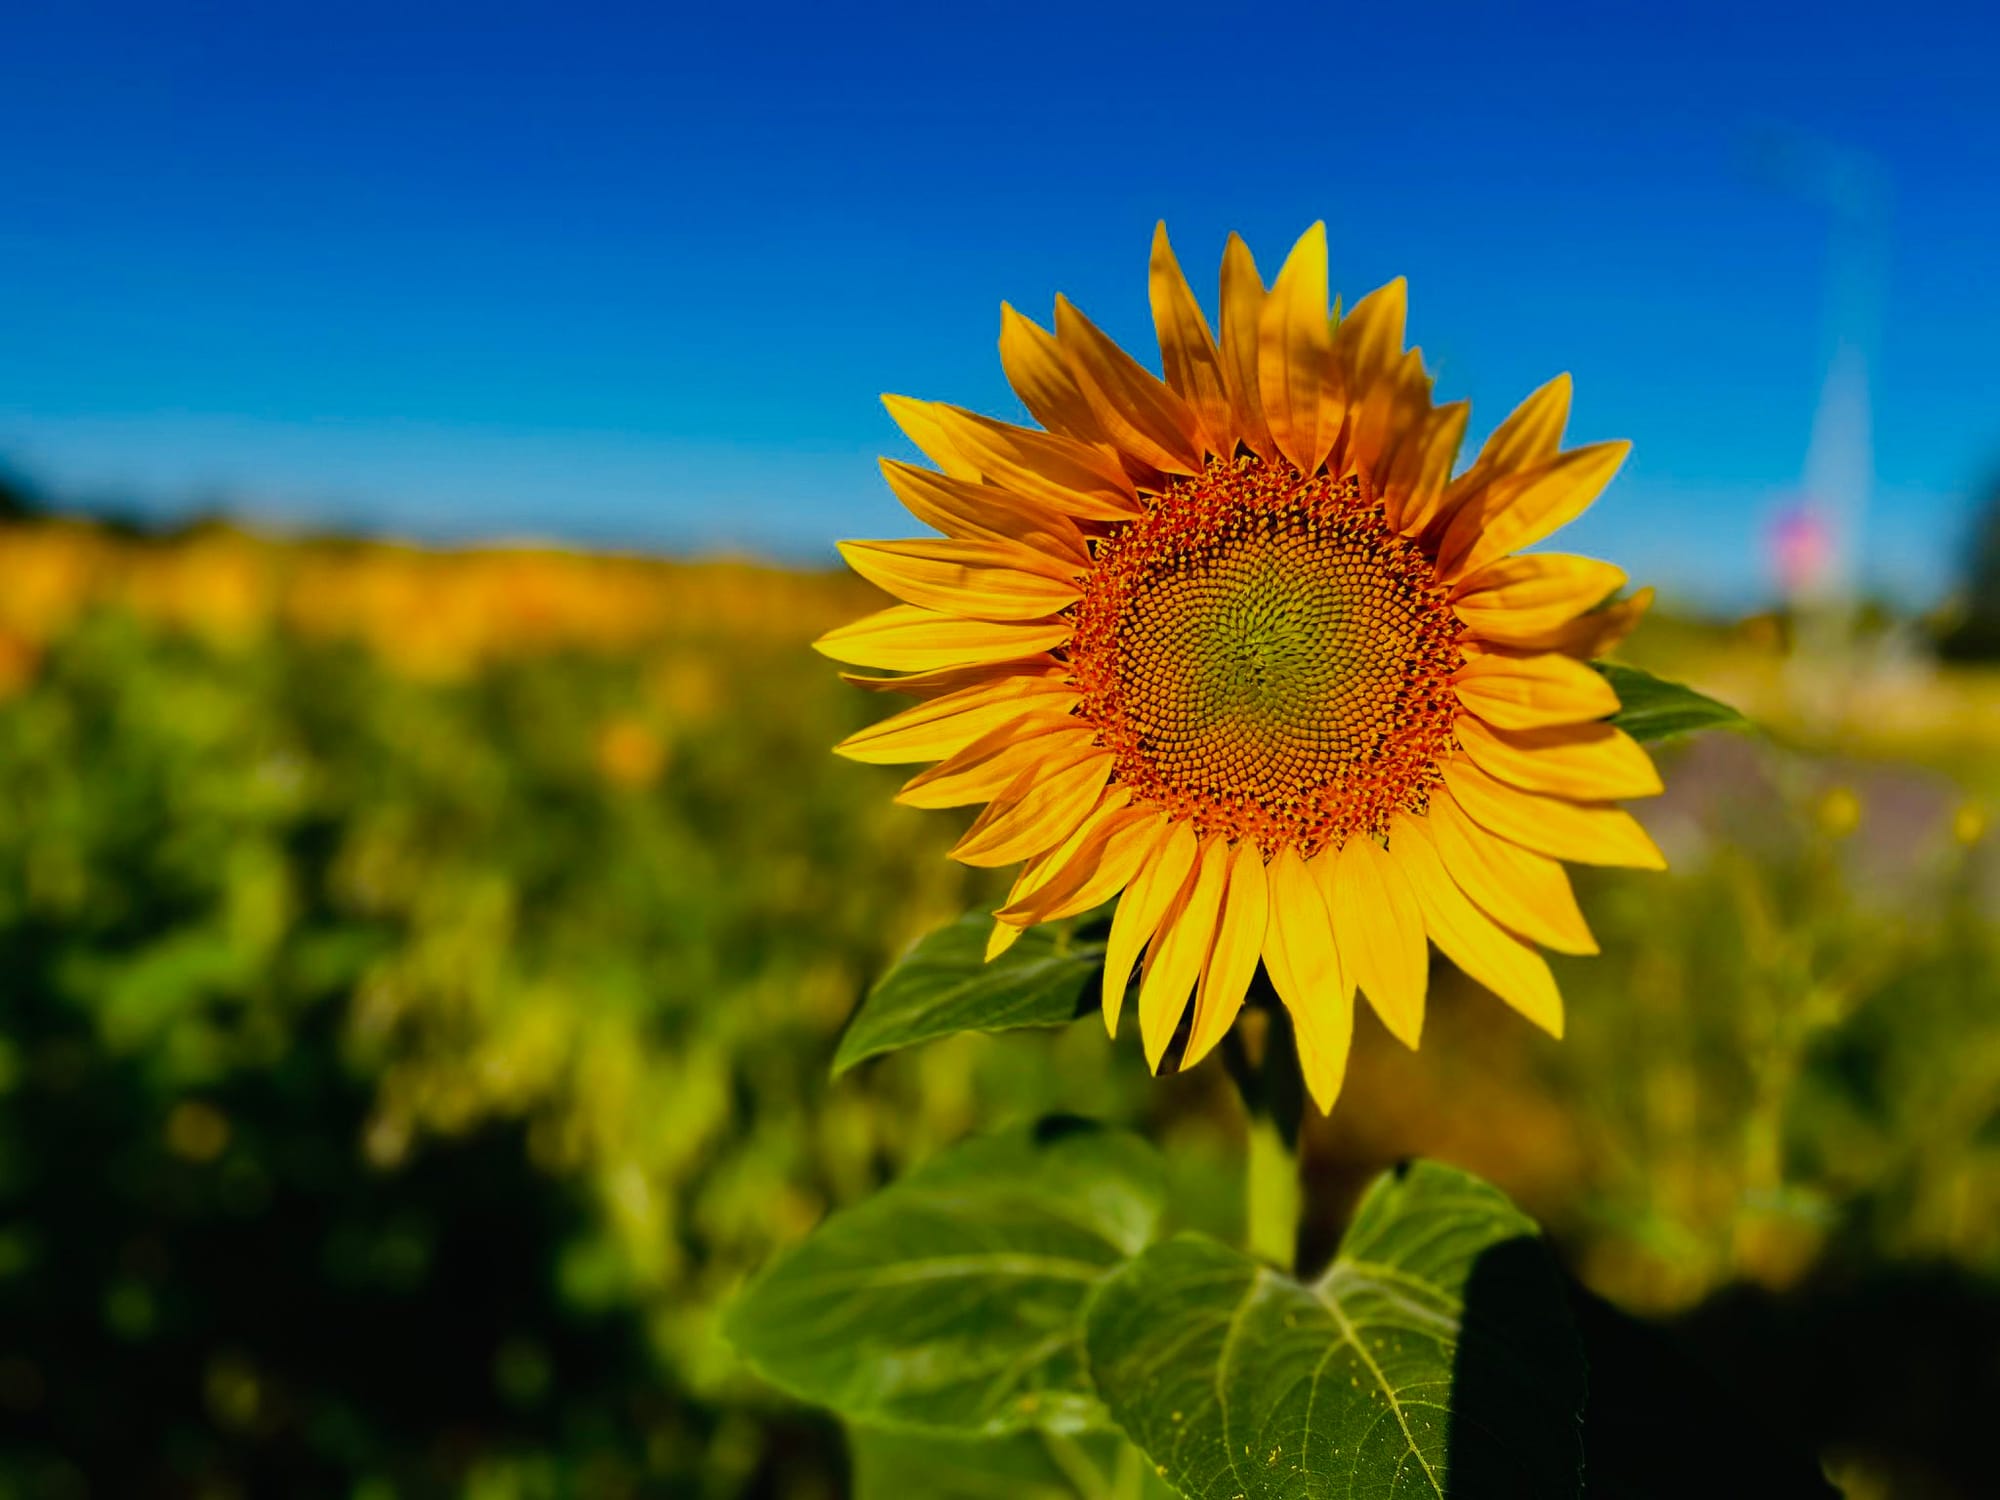 Sonnenblume im Fokus, Feld und blauer Himmel im Hintergrund. Es ist Sommer.